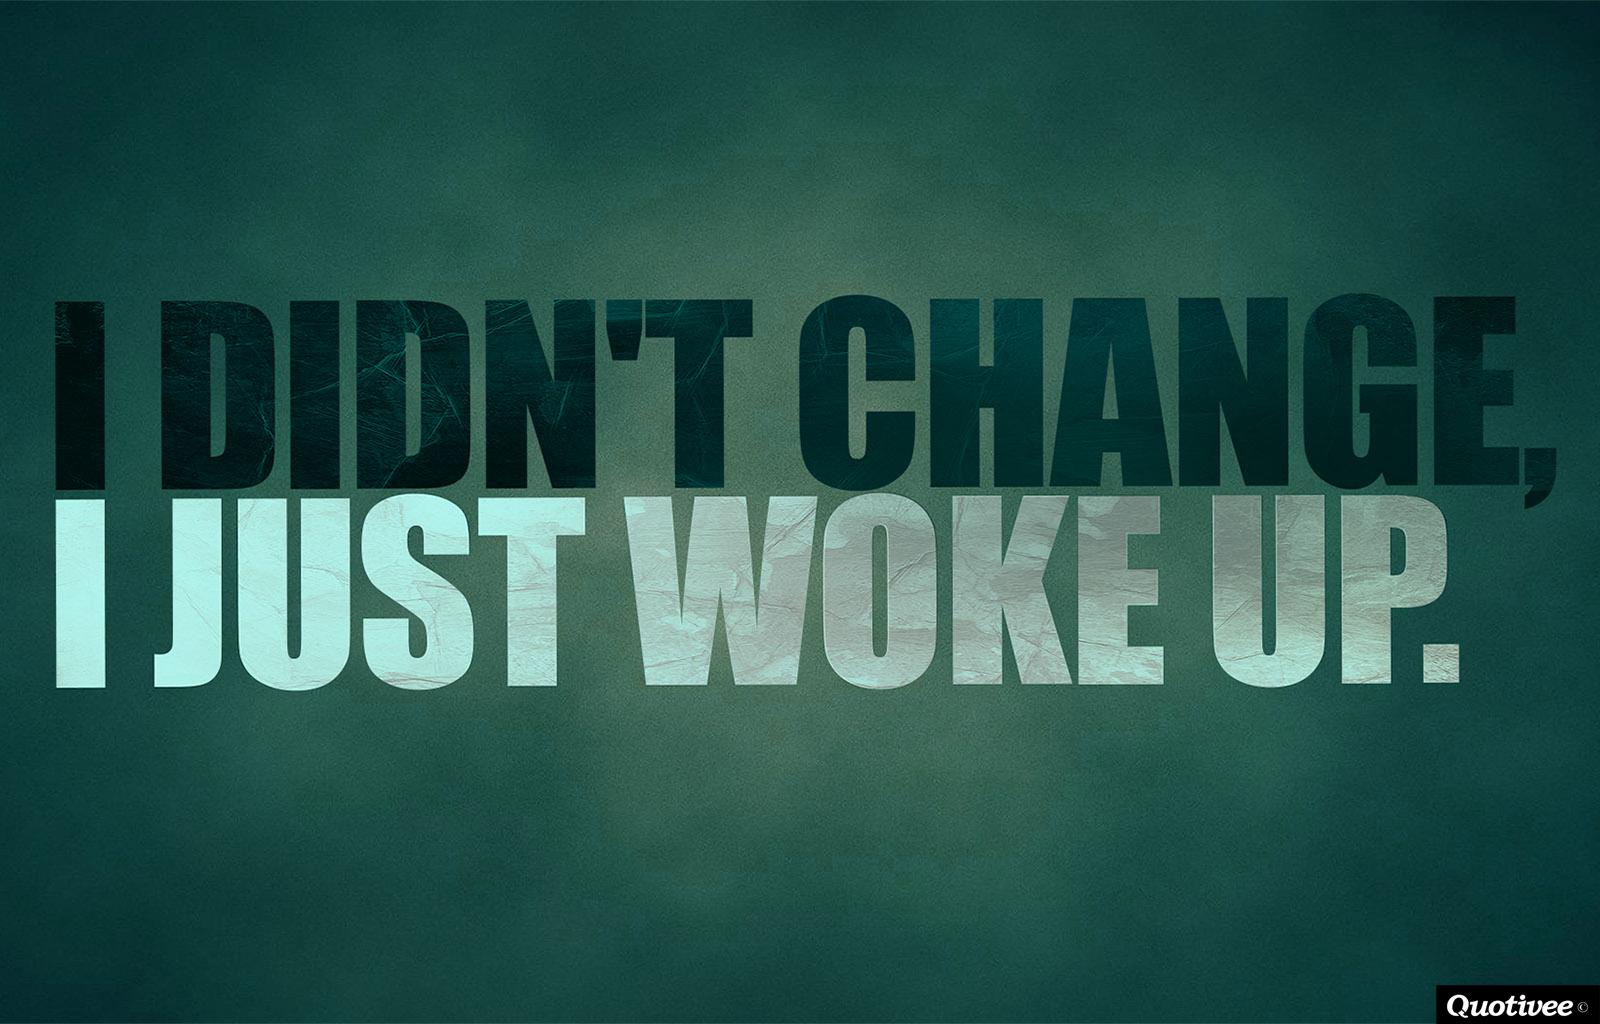 Motivational Wallpaper on Change: I didn't change I just woke up